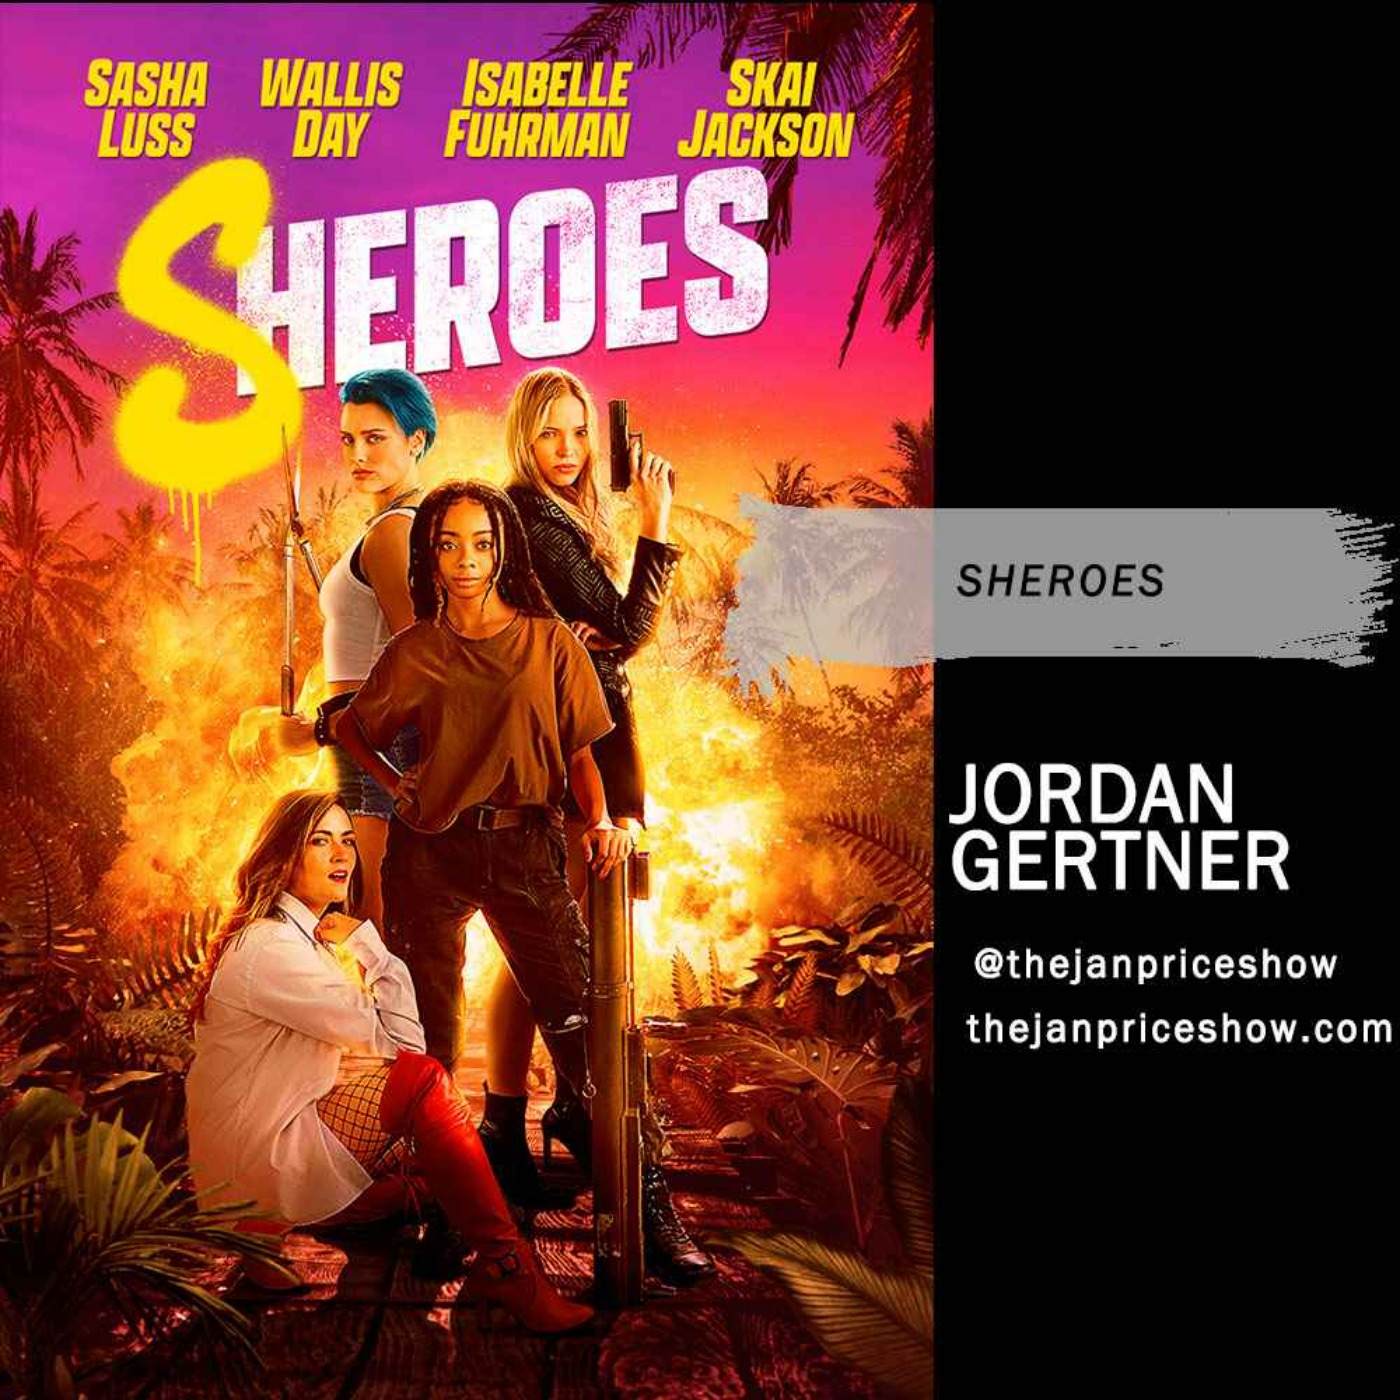 Jordan Gertner - Sheroes